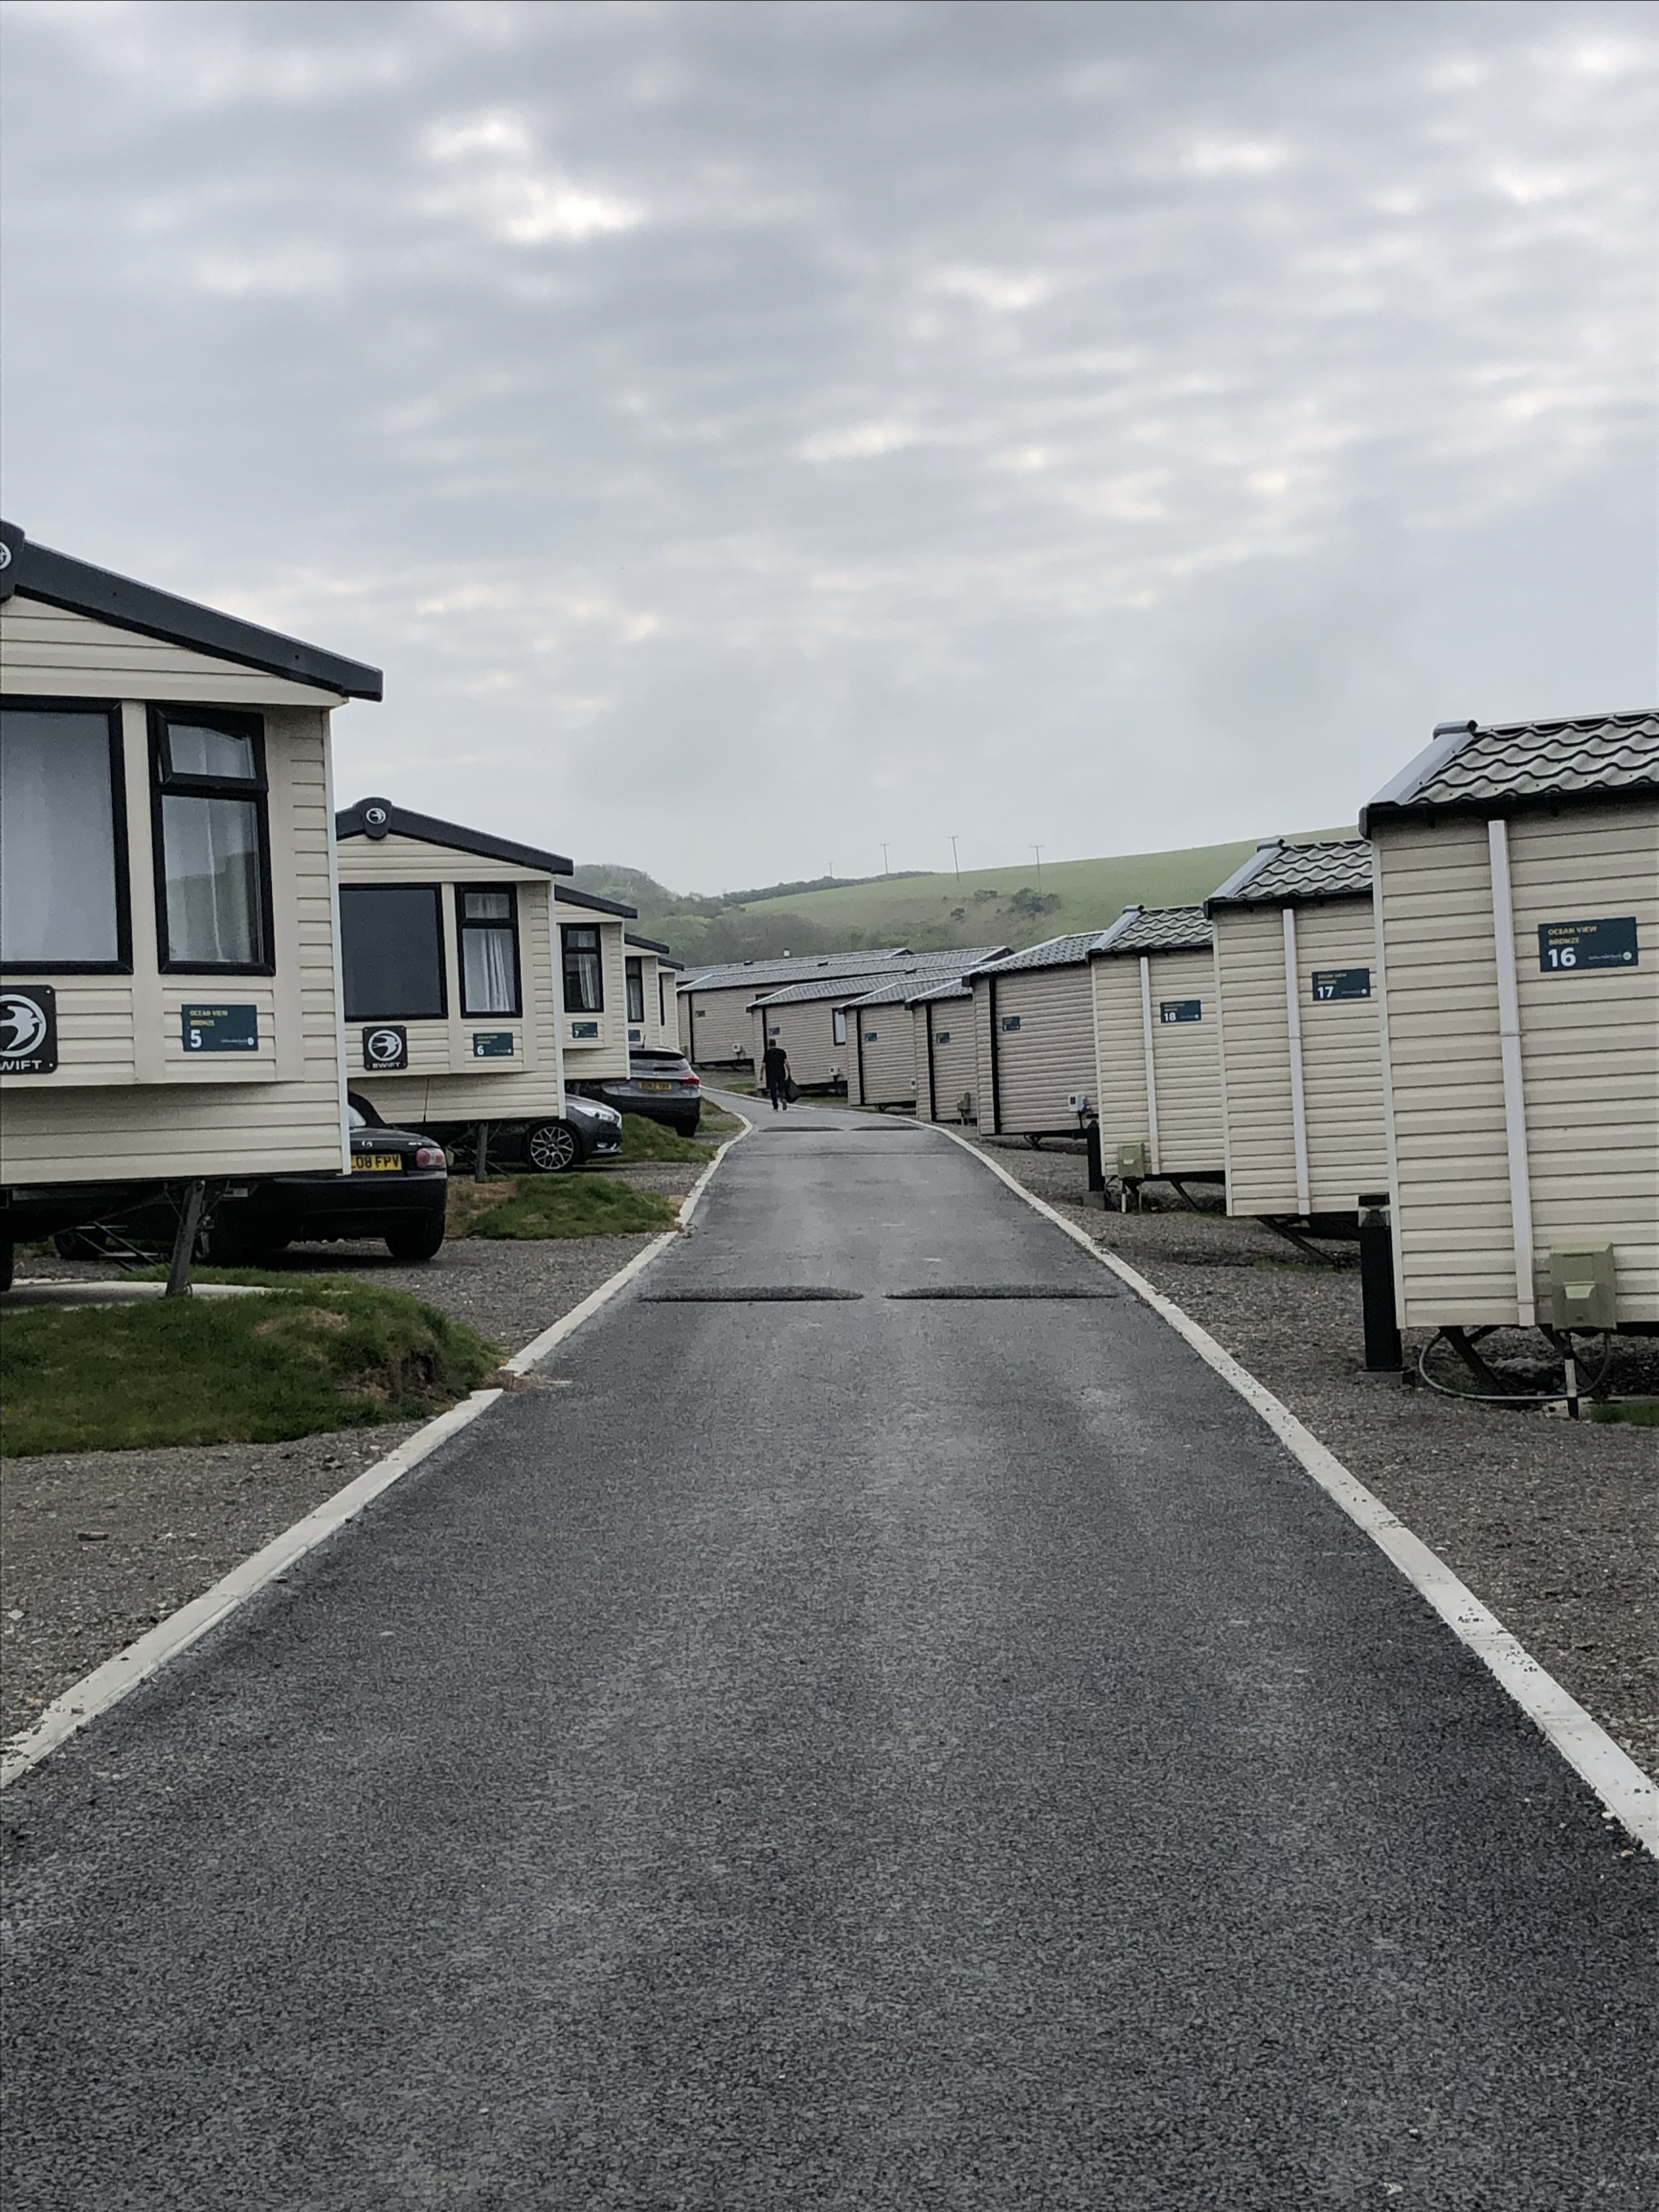 这里是Devon 的海边caravan 营地。 先给大家分享caravan 的结构，两室一厅一卫一厨